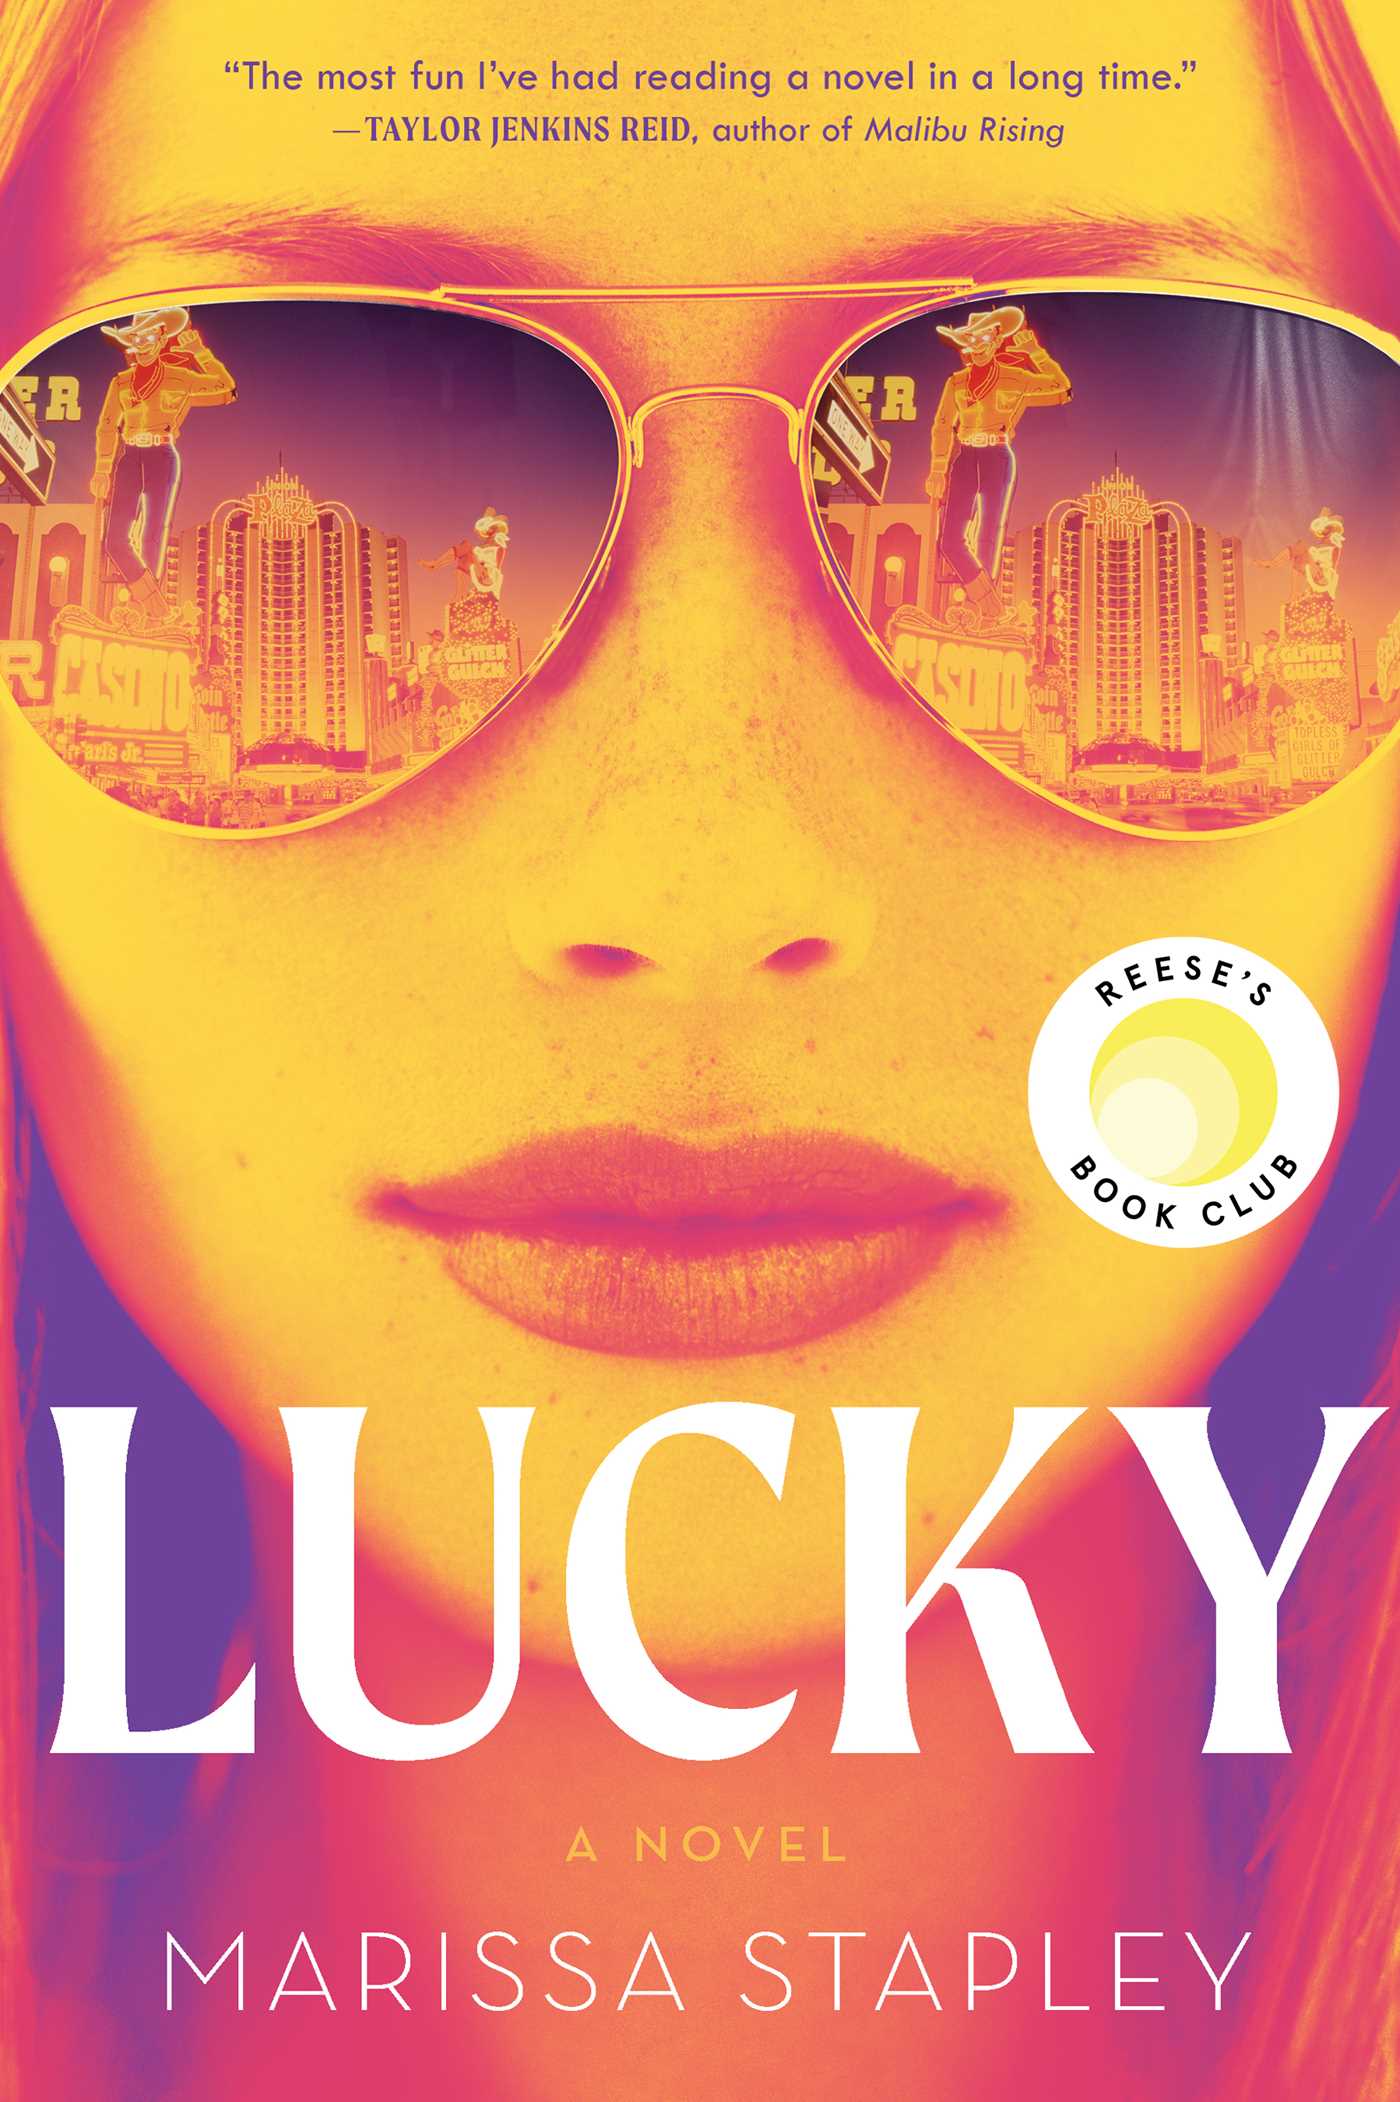 Marissa Stapley's Lucky Cover book cover